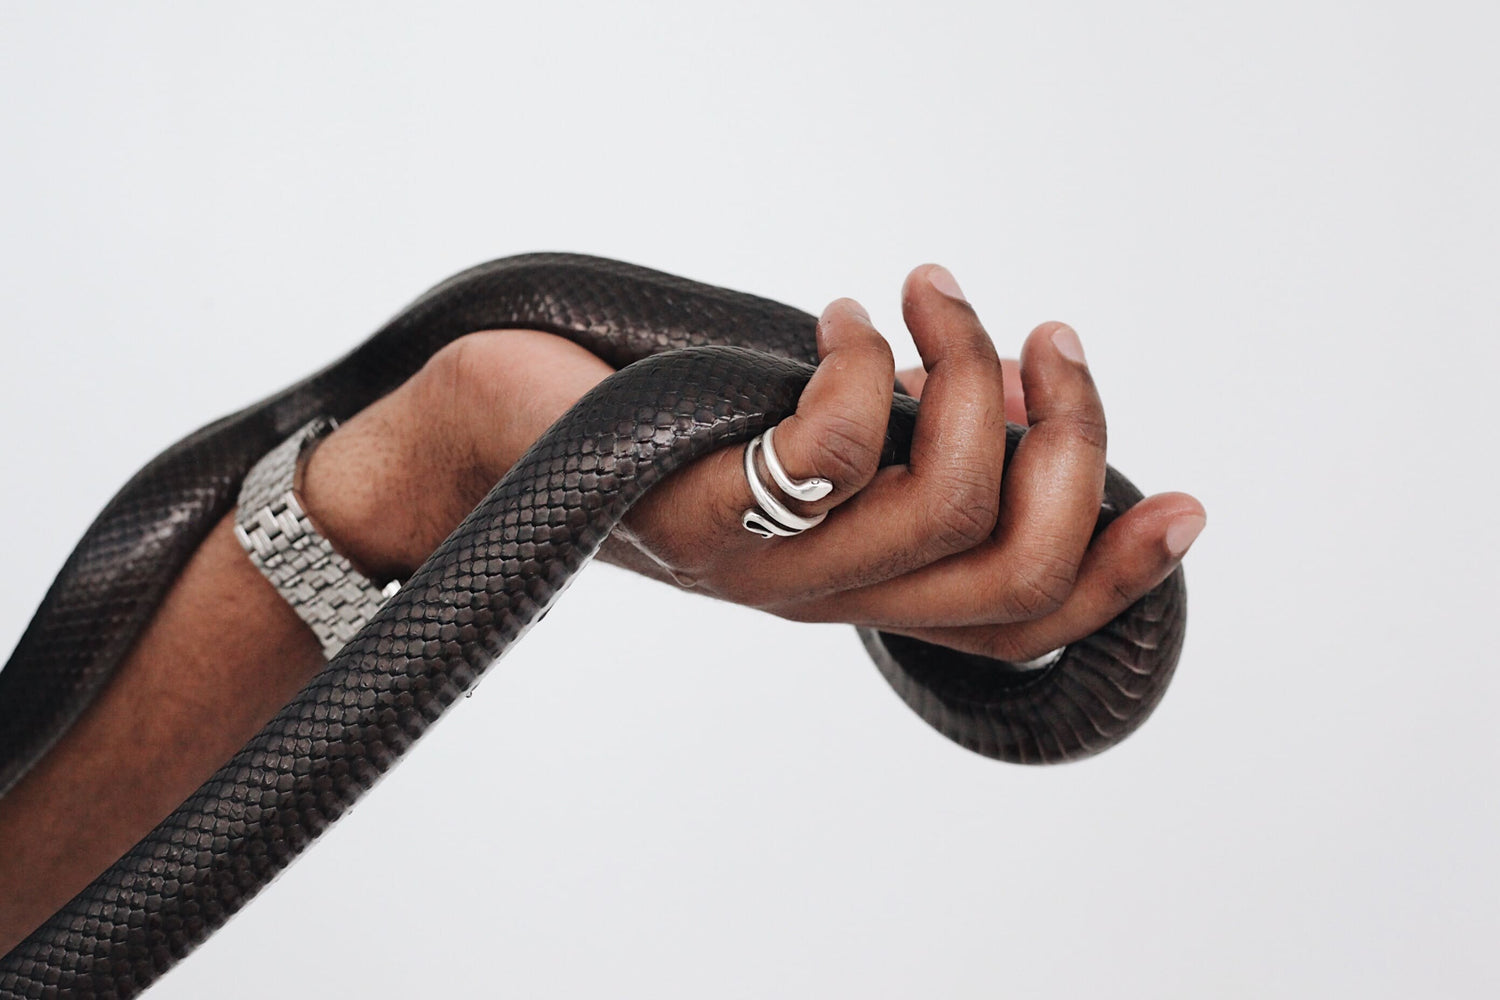 Schlangenring aus Edelstahl und schwarze Lederschlange in der Hand